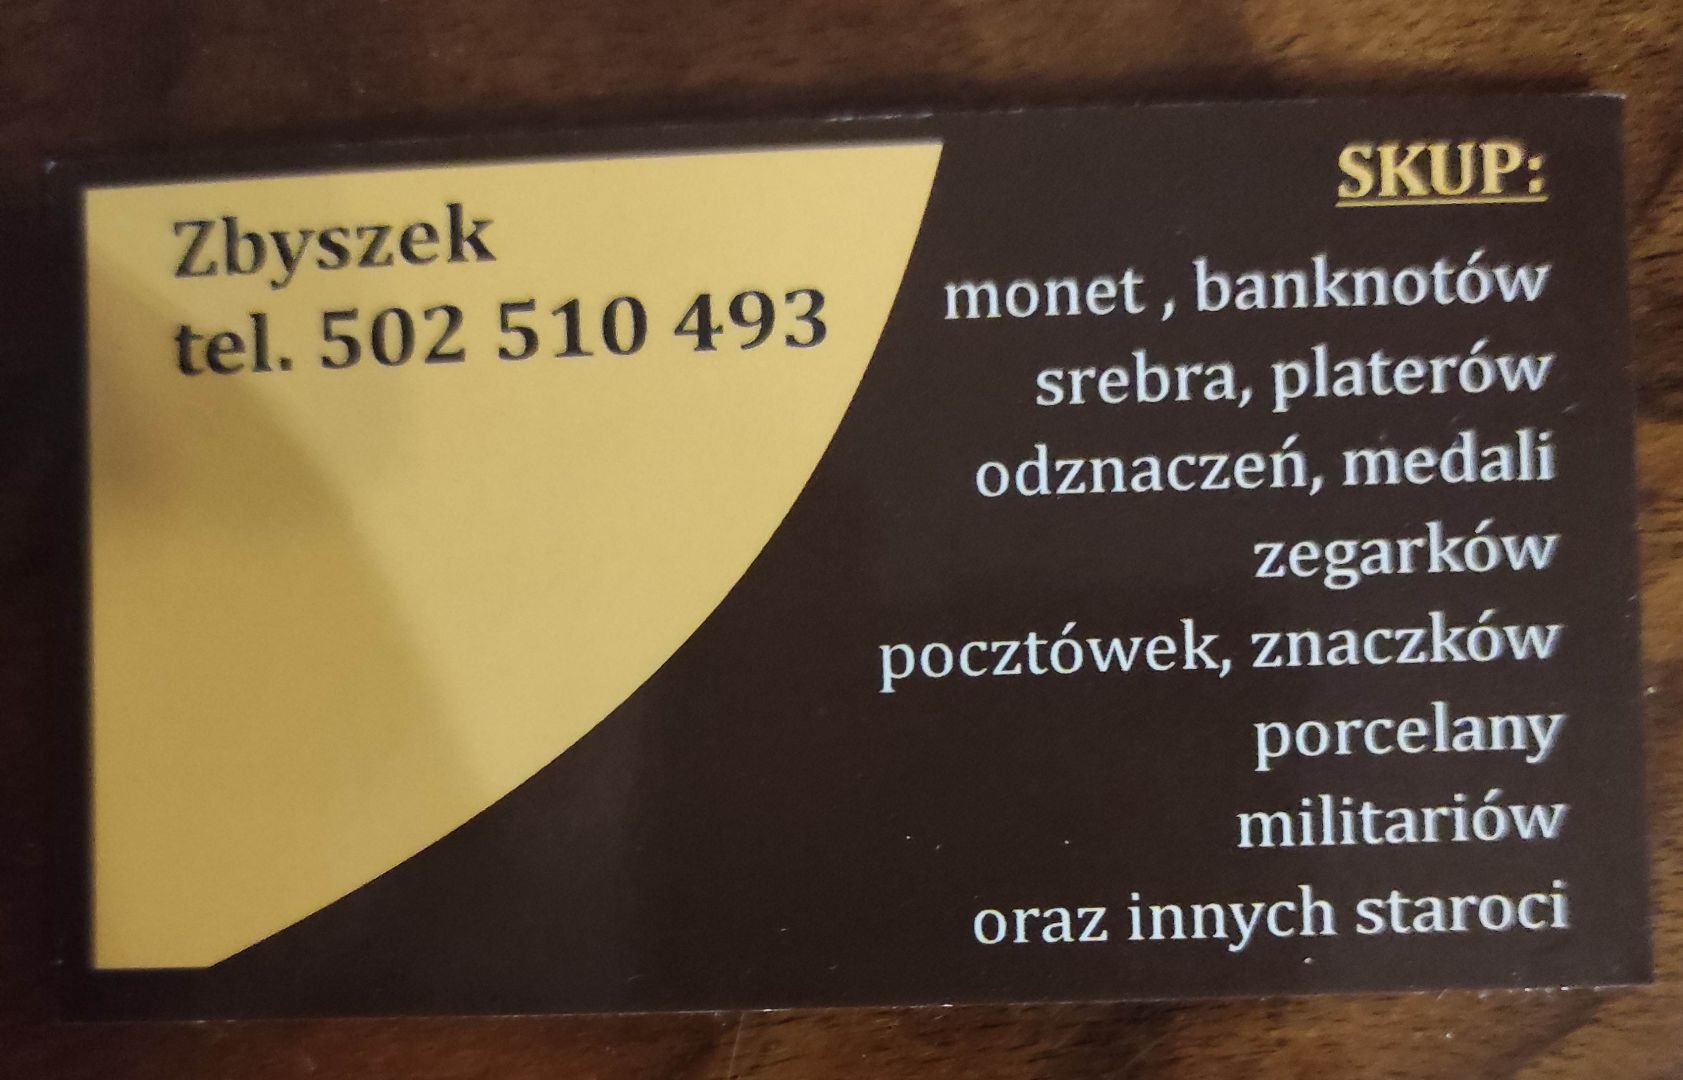 Kupię militaria srebra płyty winylowe inne starocia Warszawa - Zdjęcie 1